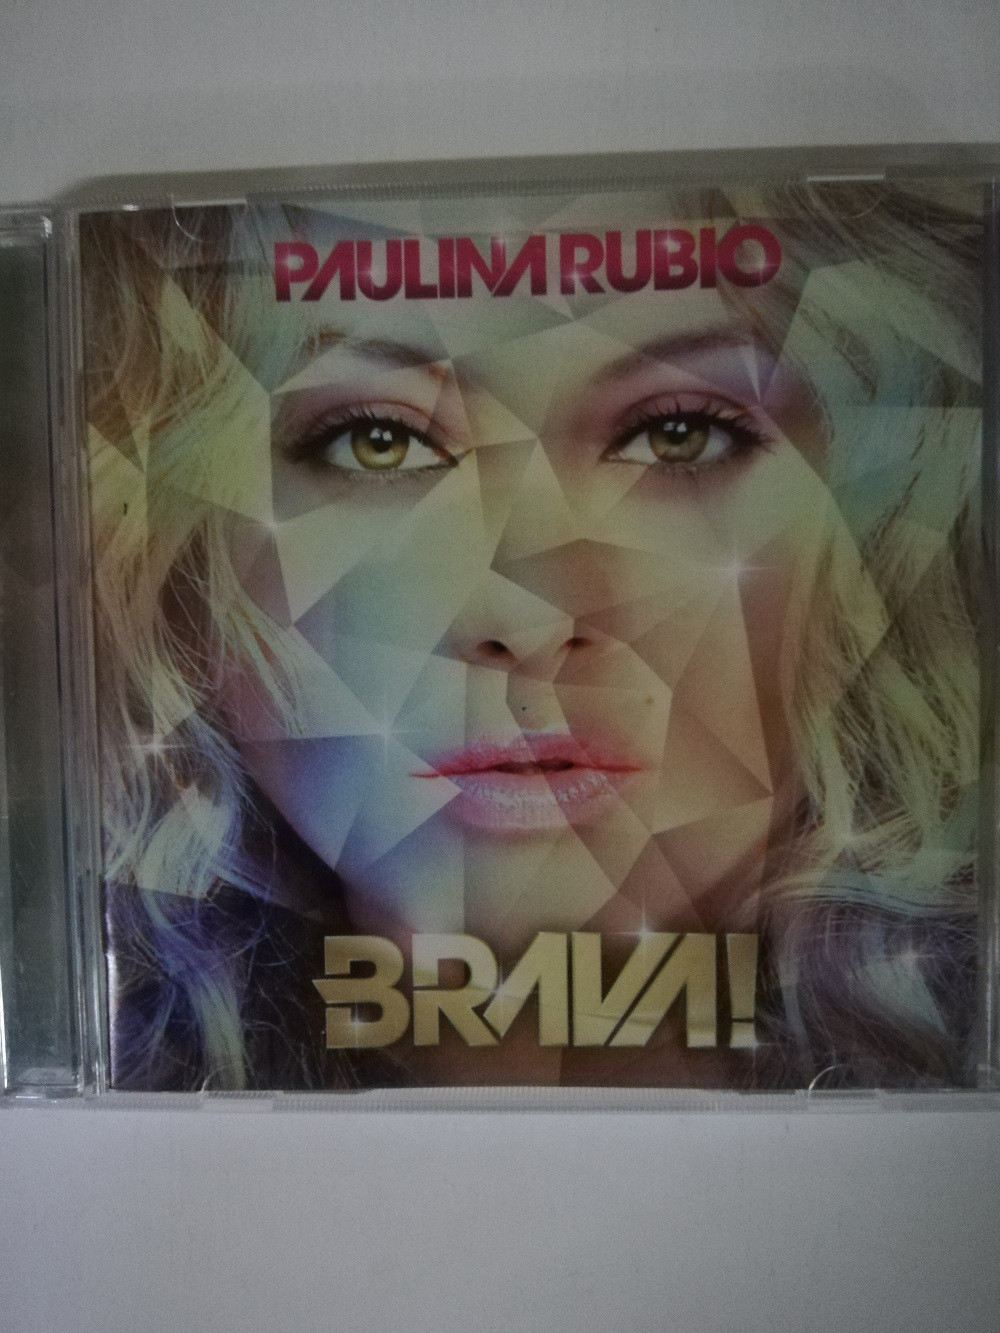 Imagen CD PAULINA RUBIO - BRAVA!